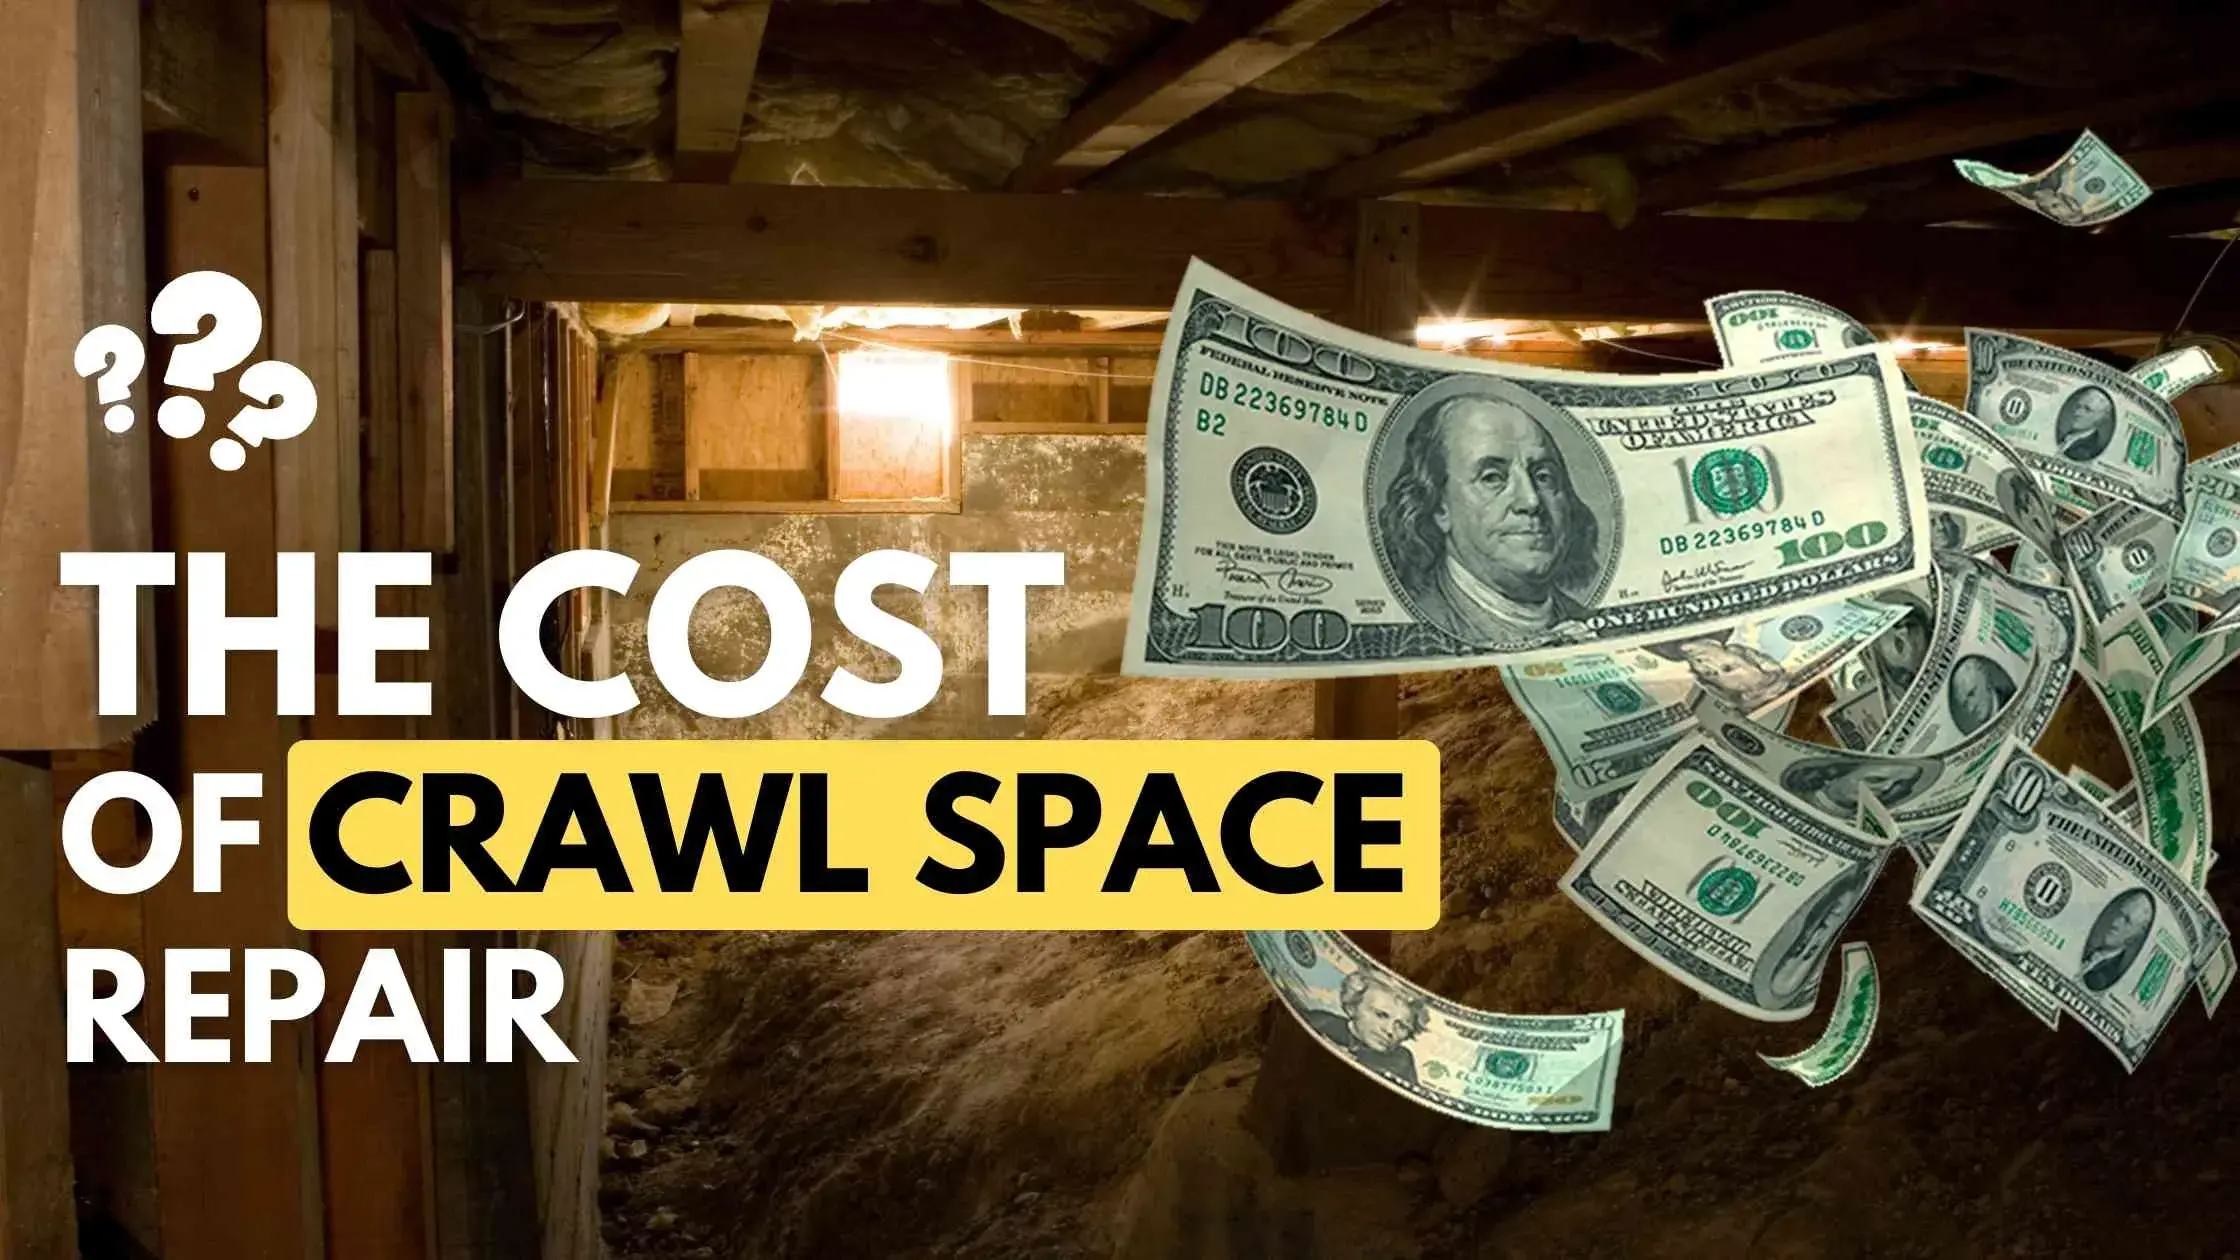 Crawl Space Repair Costs | Expert Guide